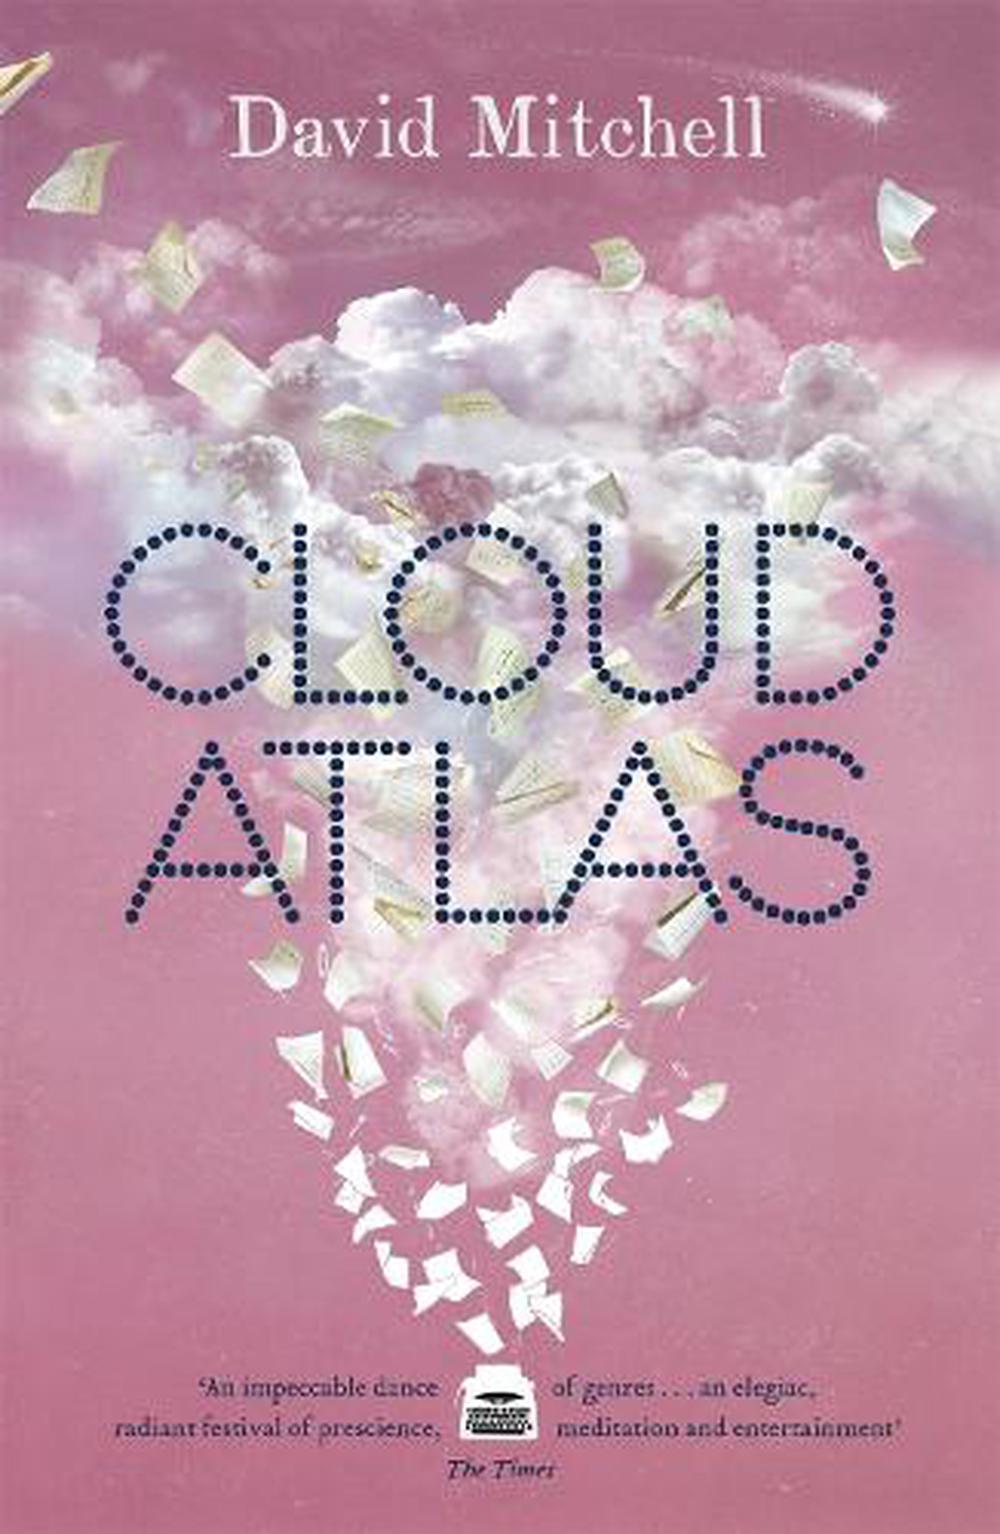 cloud atlas author